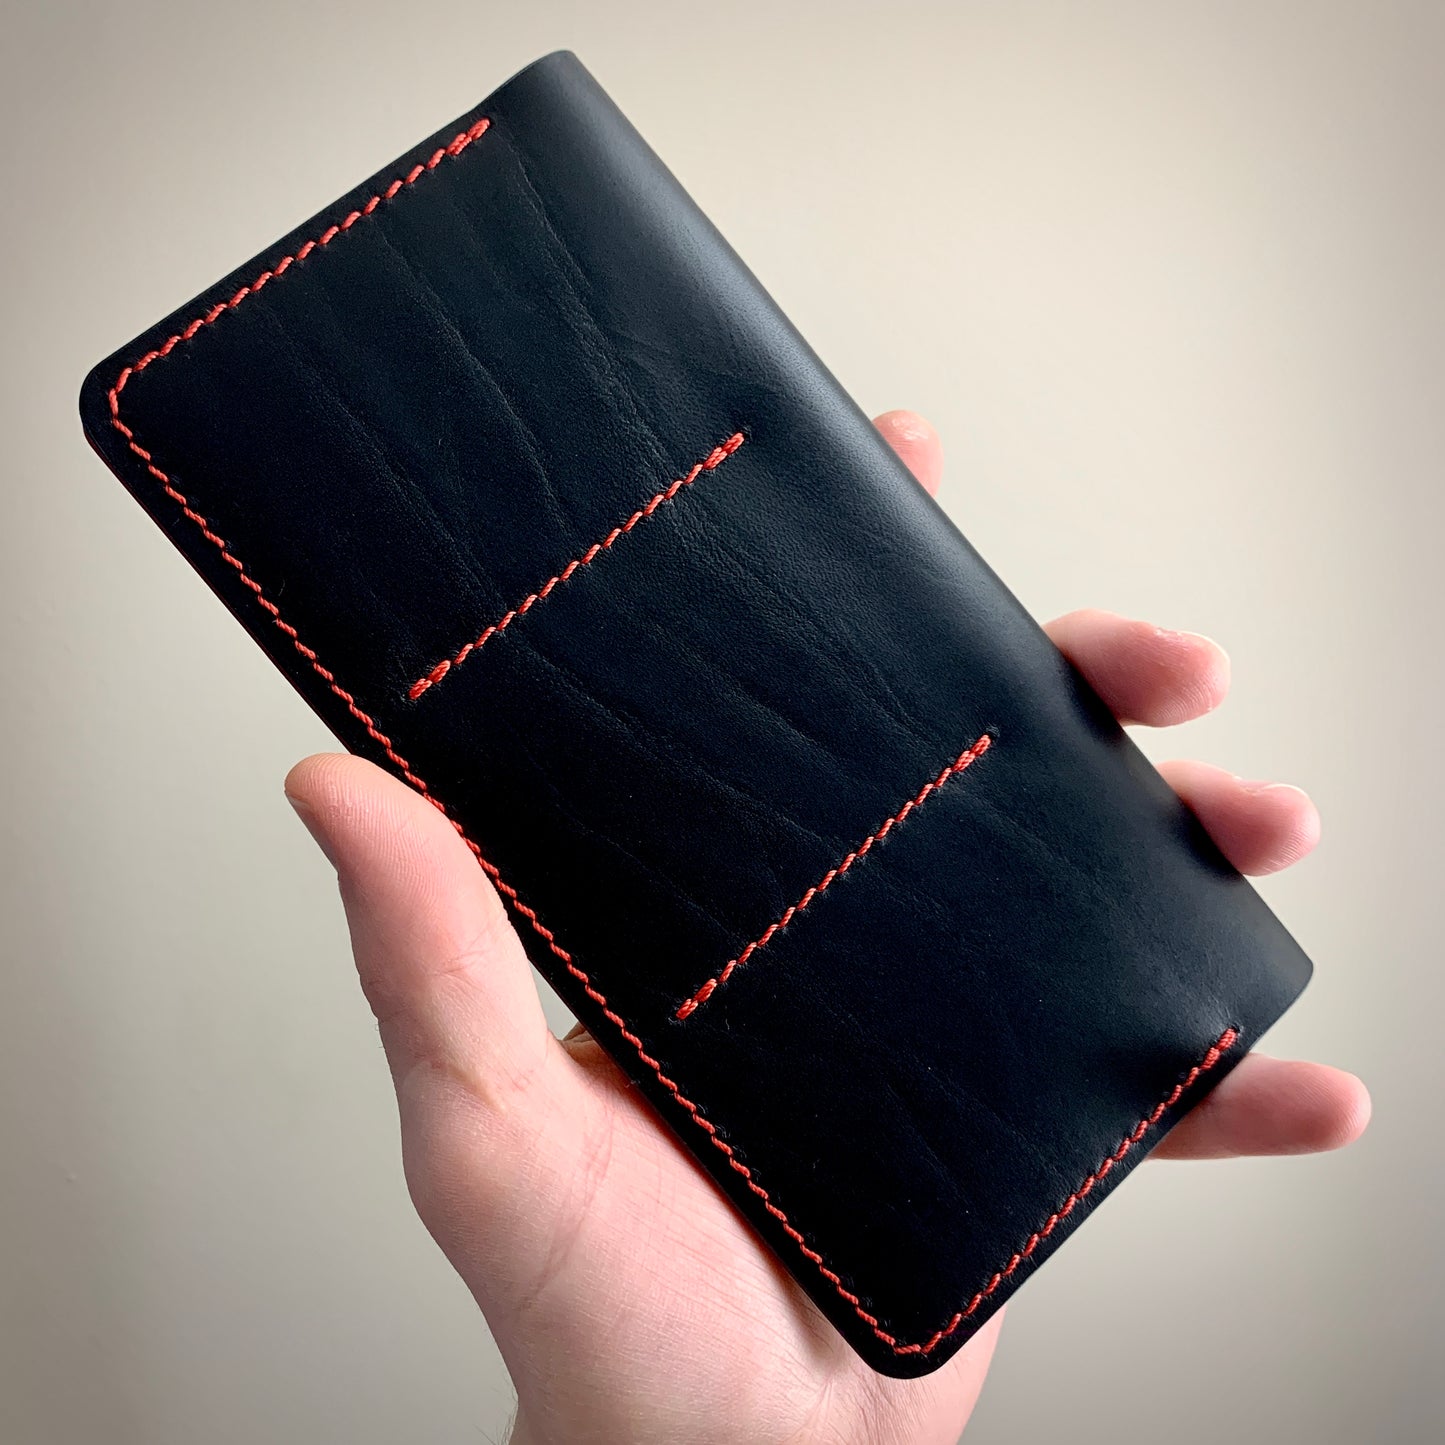 Joyrider 3 Wallet - Black/Red